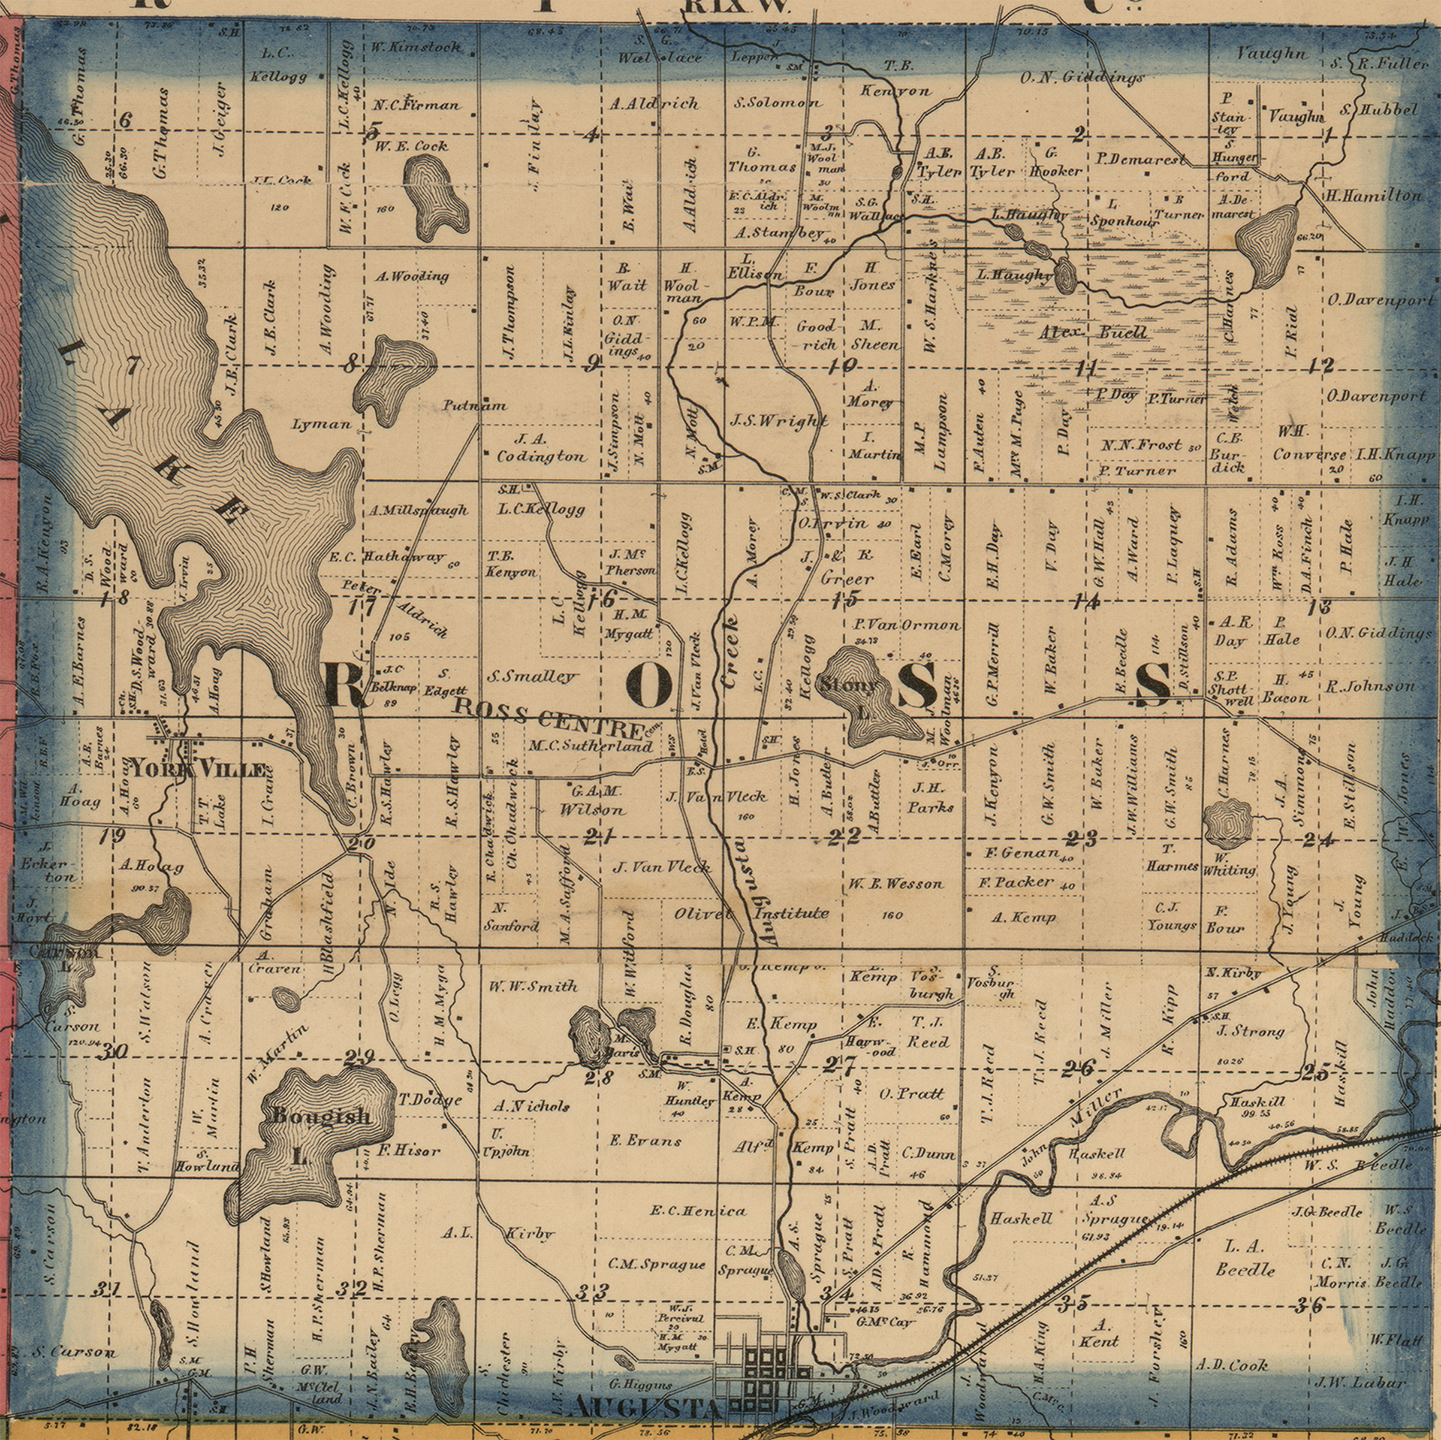 1861 Ross Township Michigan landownership map